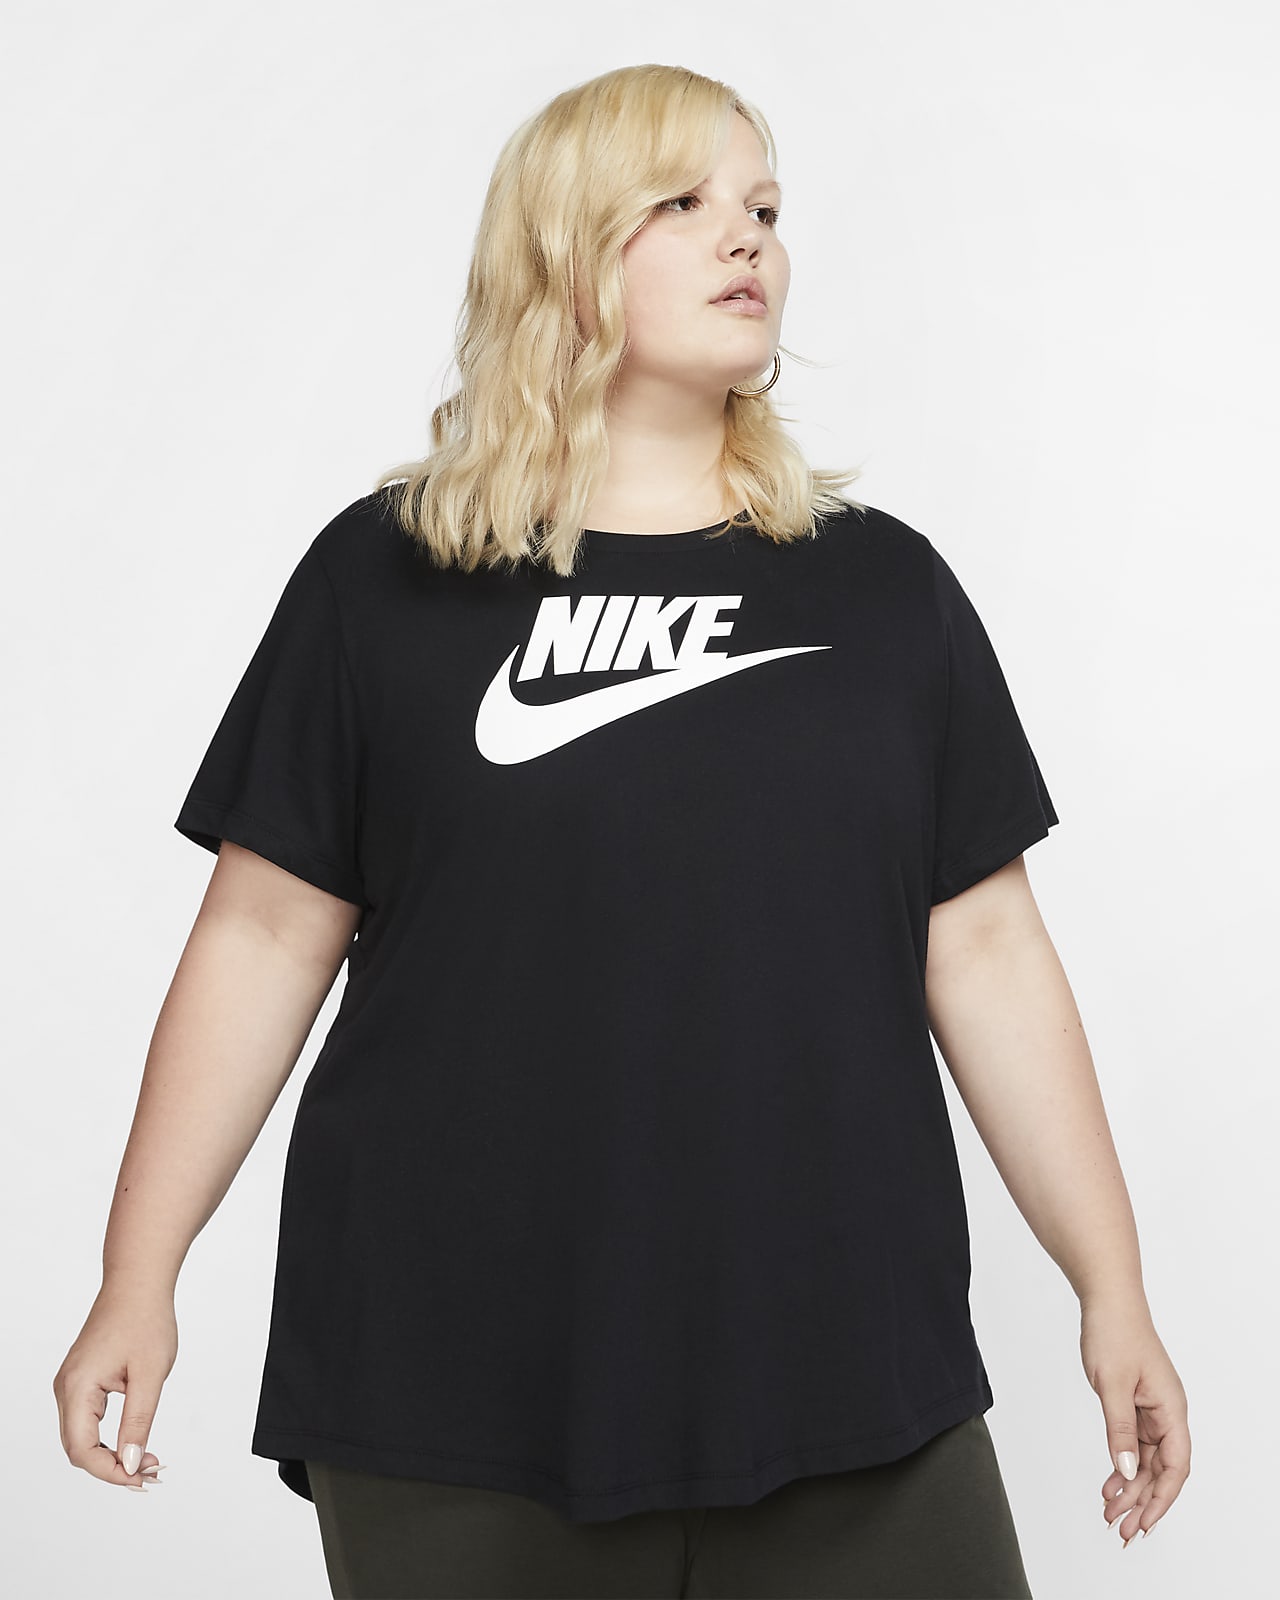 Nike公式 ナイキ スポーツウェア エッセンシャル ウィメンズ Tシャツ 大きめサイズ オンラインストア 通販サイト